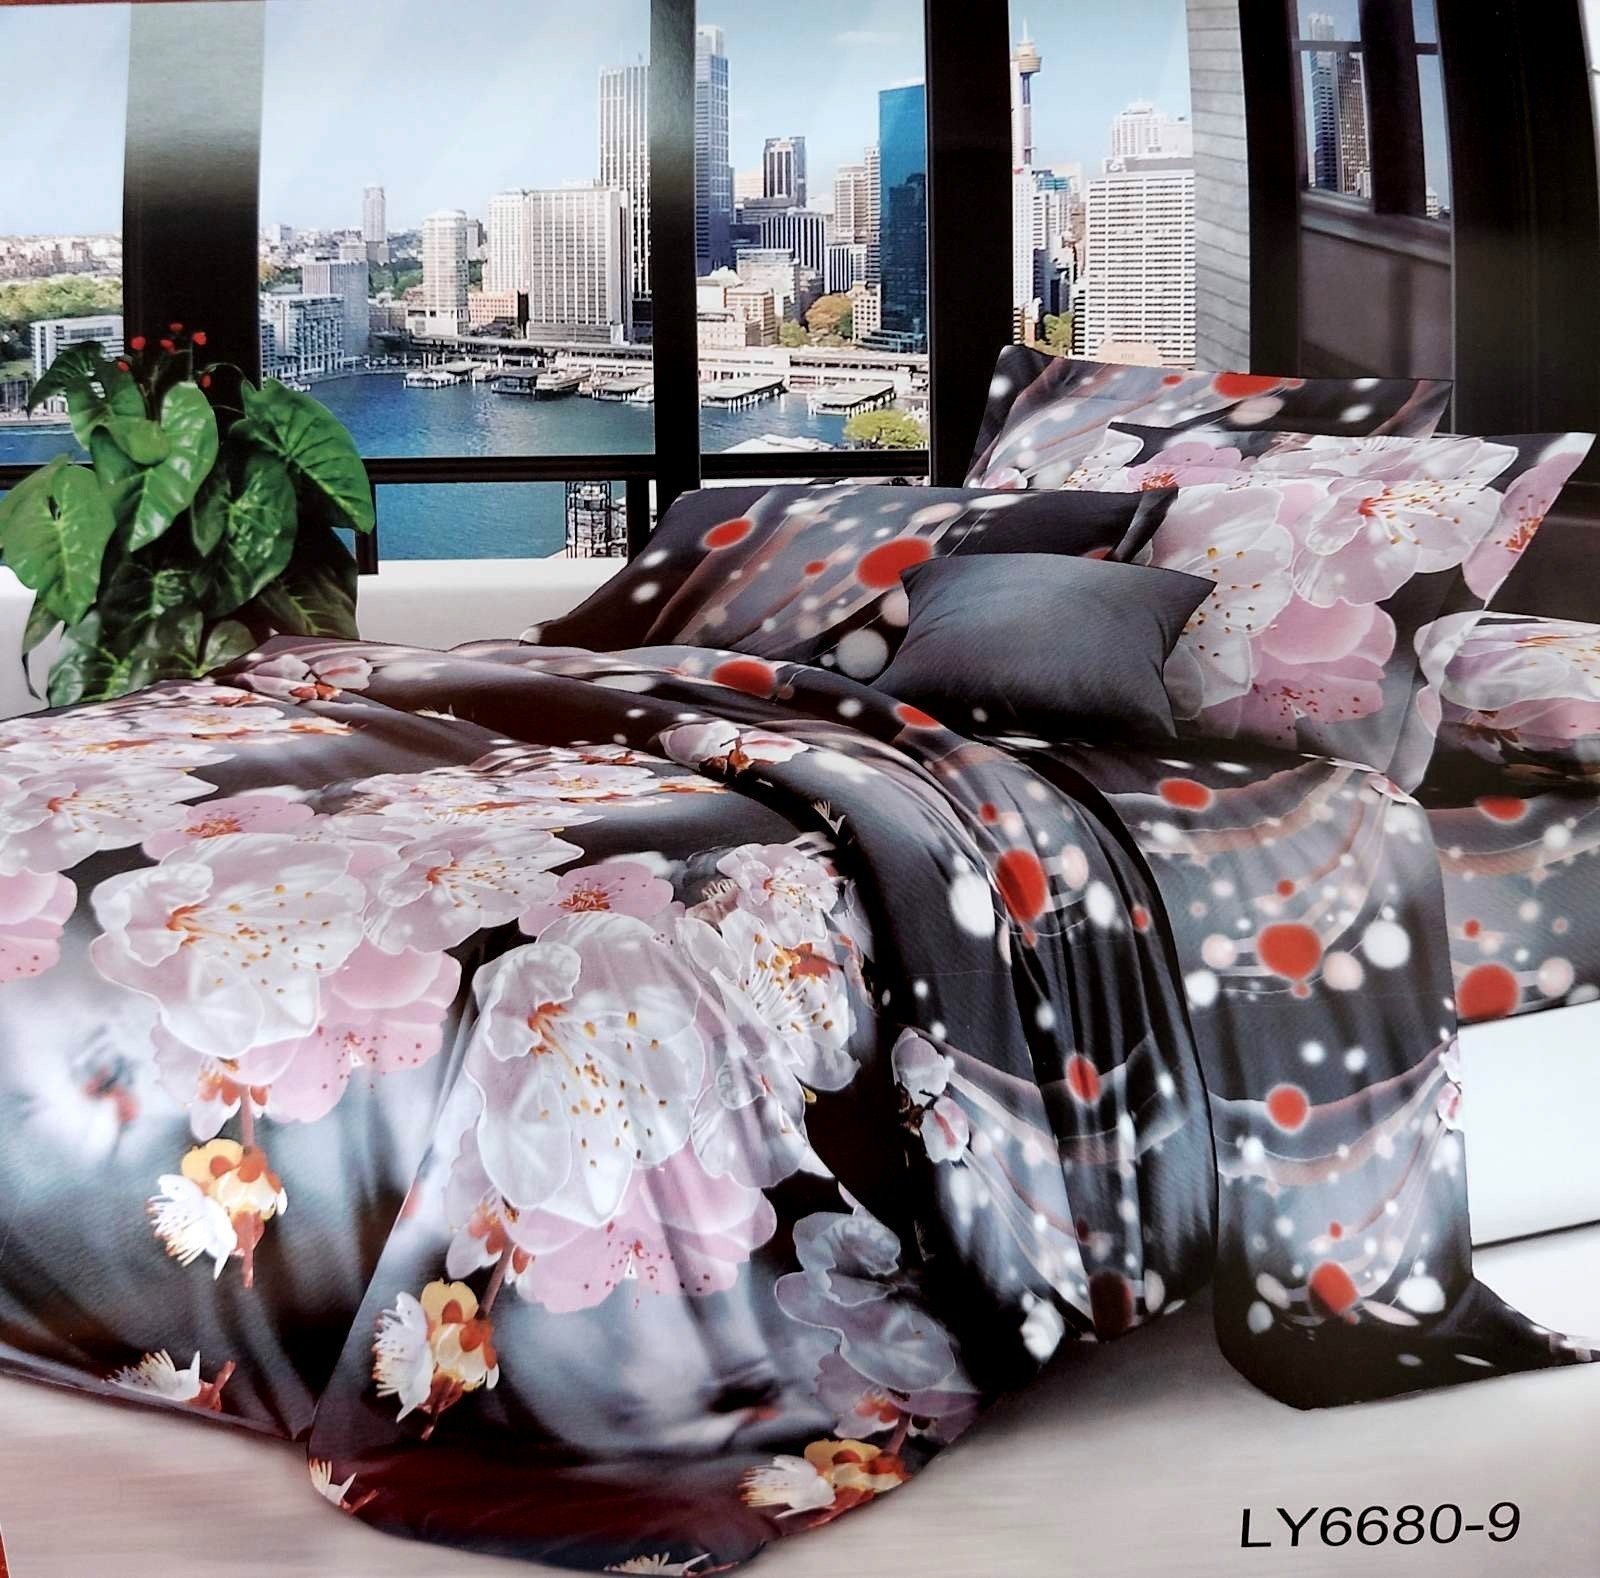 

Комплект постельного белья Поликоттон семейный "Орхидея" на темном